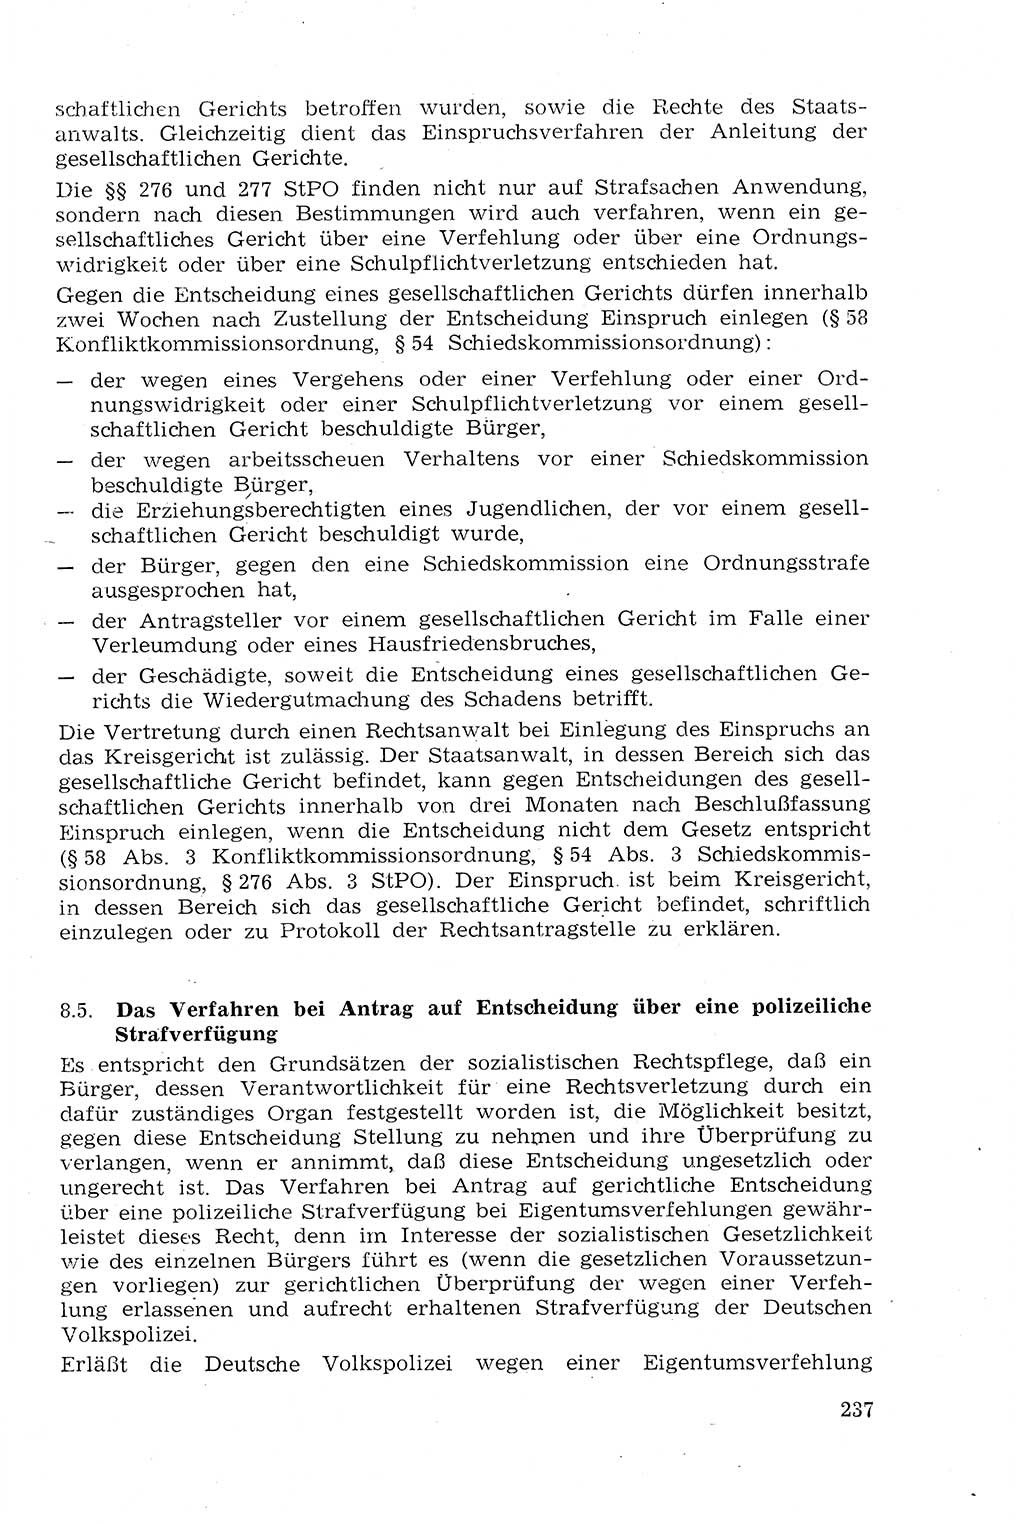 Strafprozeßrecht der DDR (Deutsche Demokratische Republik), Lehrmaterial 1969, Seite 237 (Strafprozeßr. DDR Lehrmat. 1969, S. 237)